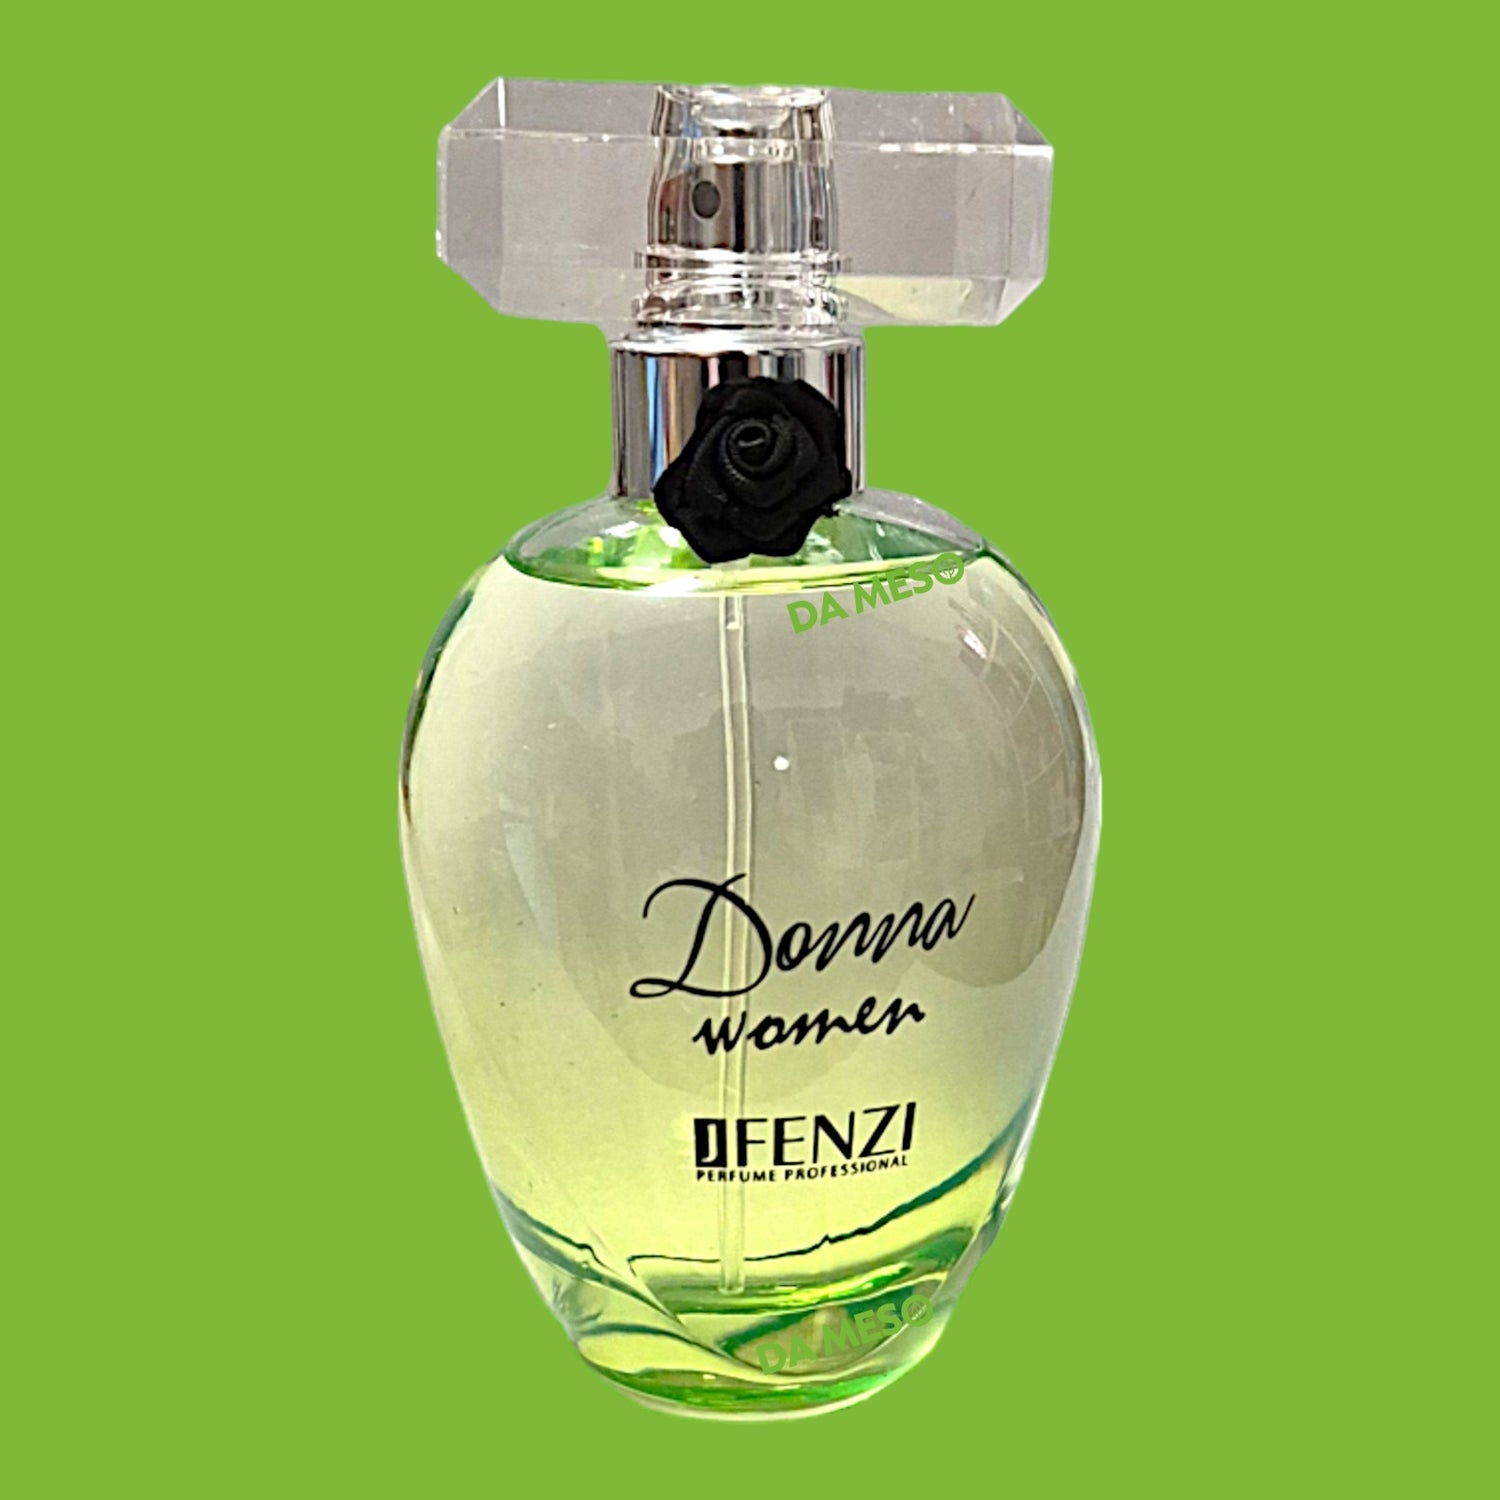 JFenzi Donna Day und Night Woman Eau de Parfum 100 ml